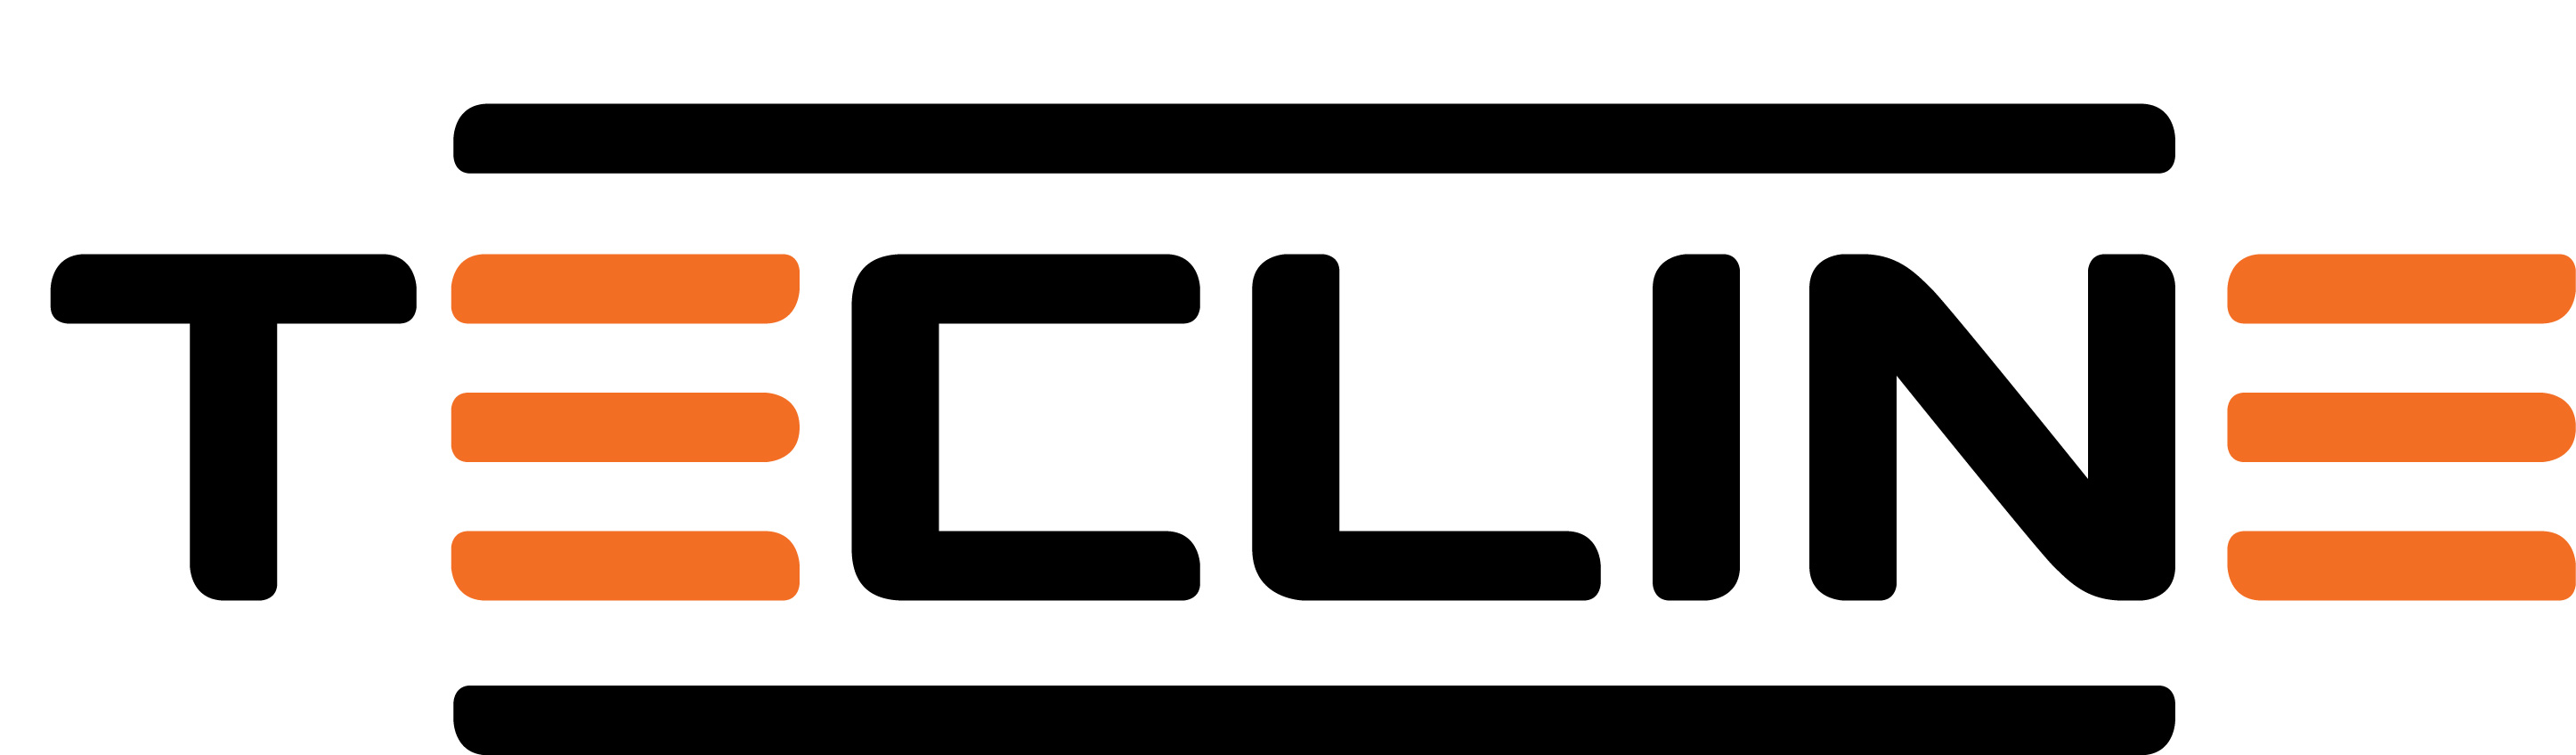 01 logo main